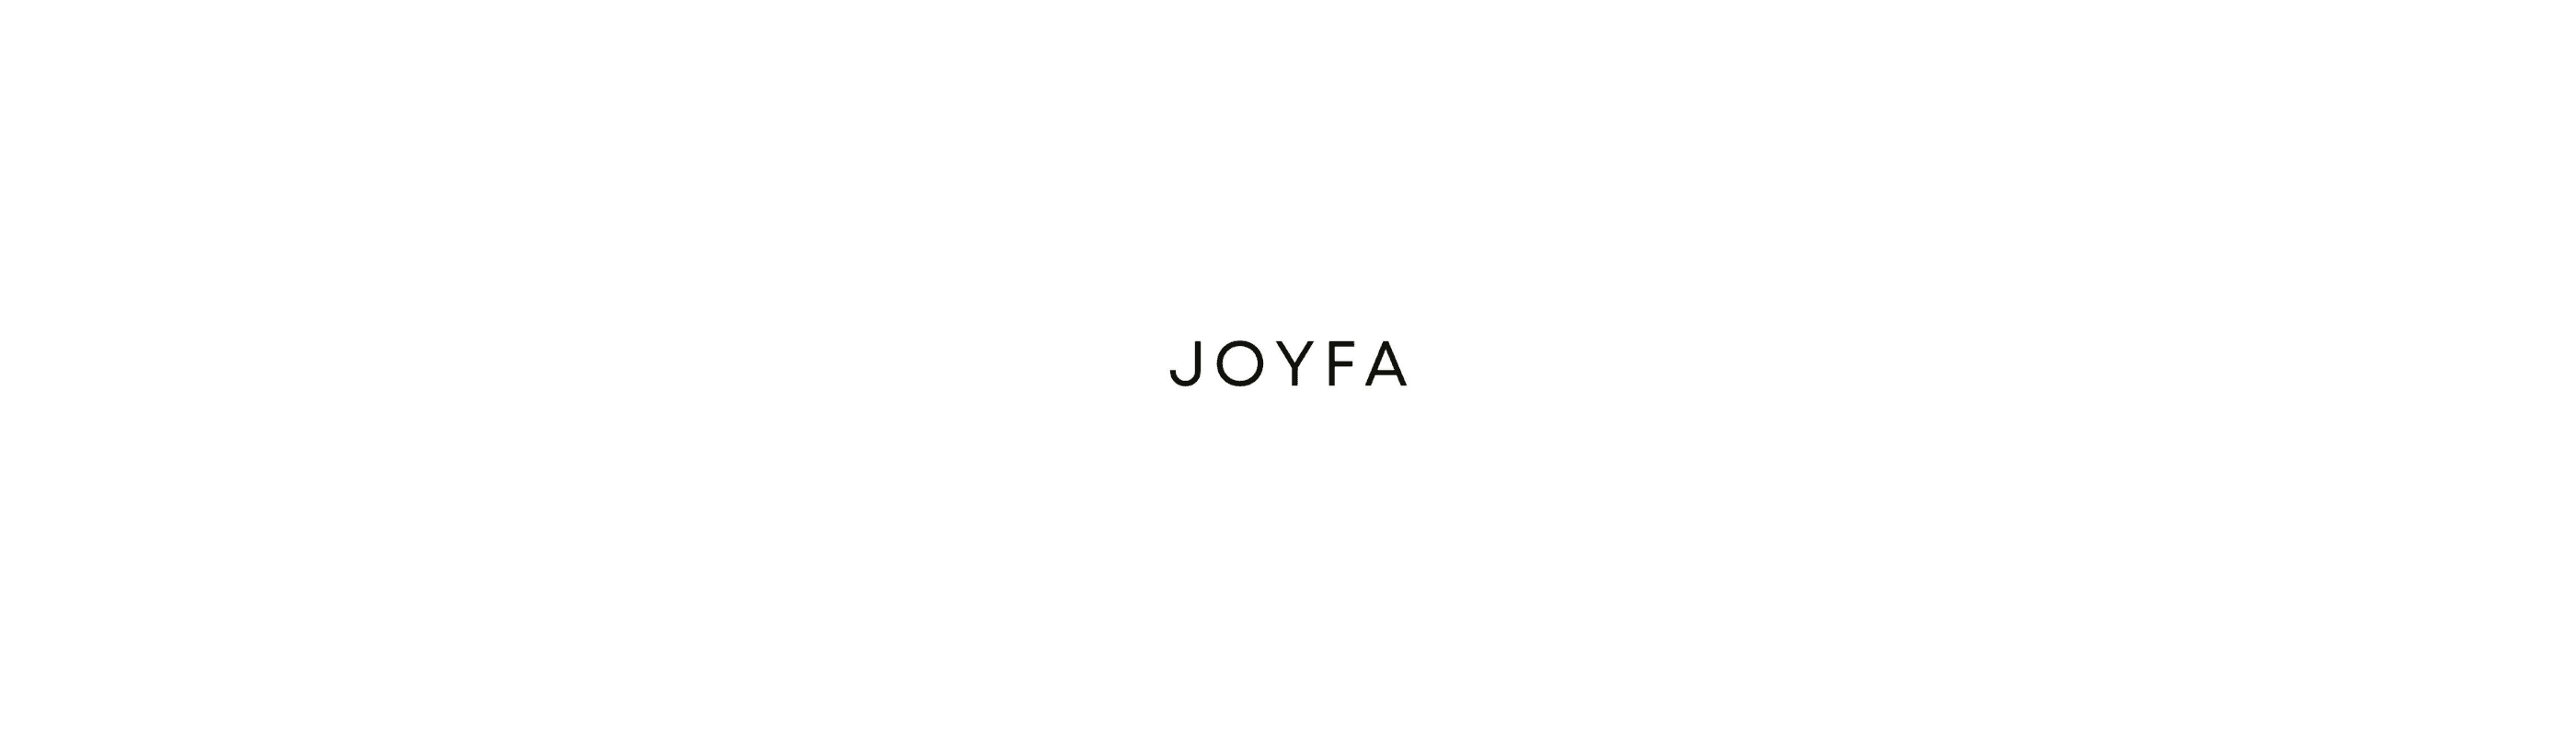 Joyfa